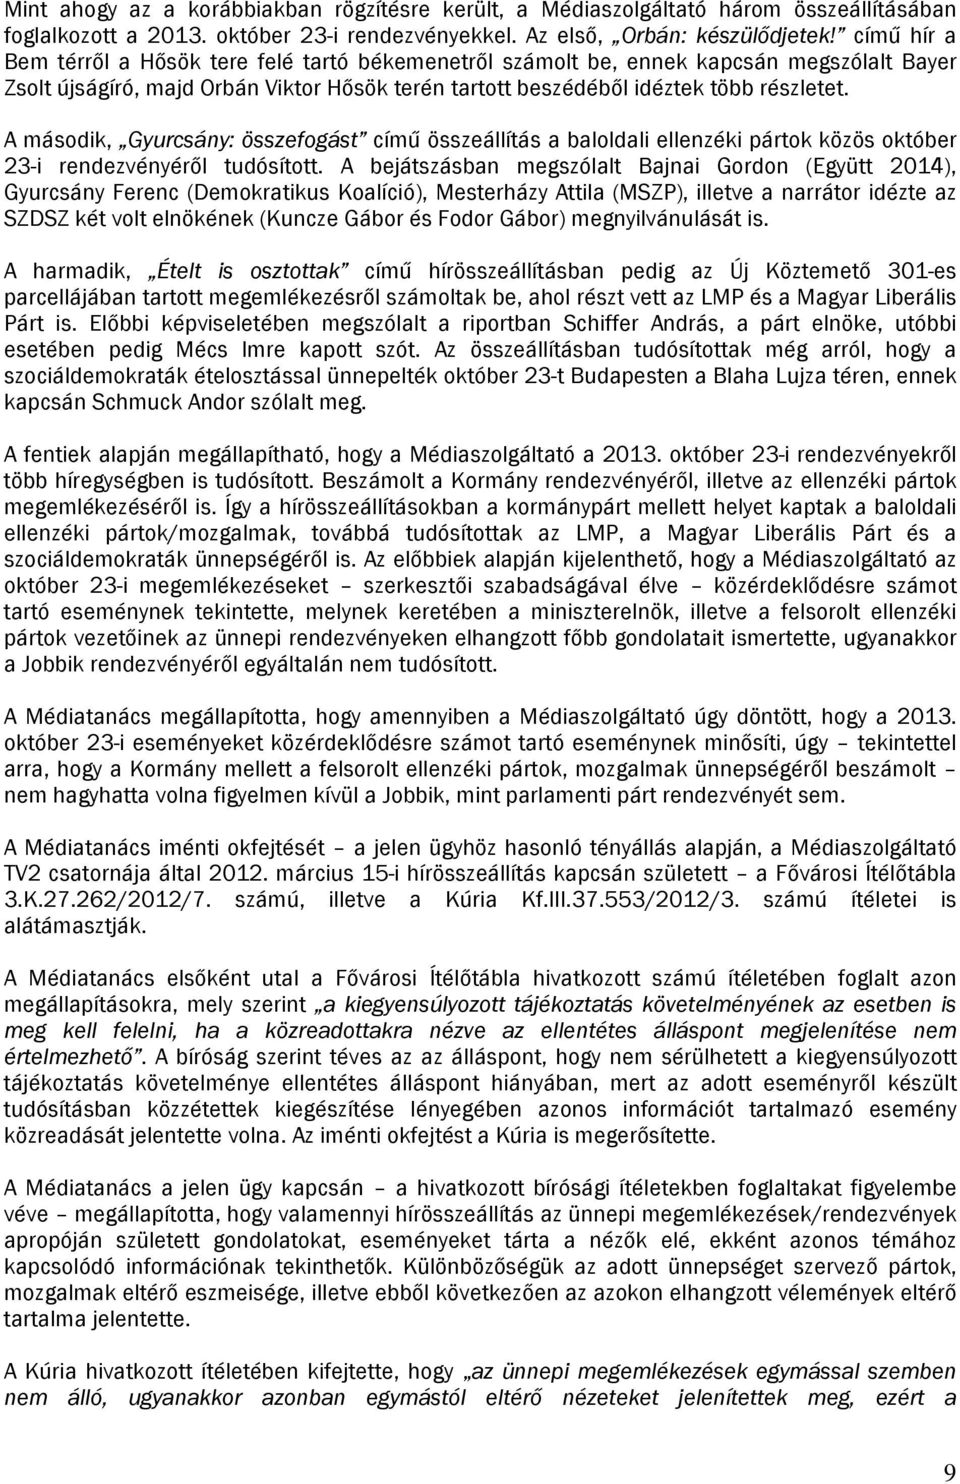 A második, Gyurcsány: összefogást című összeállítás a baloldali ellenzéki pártok közös október 23-i rendezvényéről tudósított.